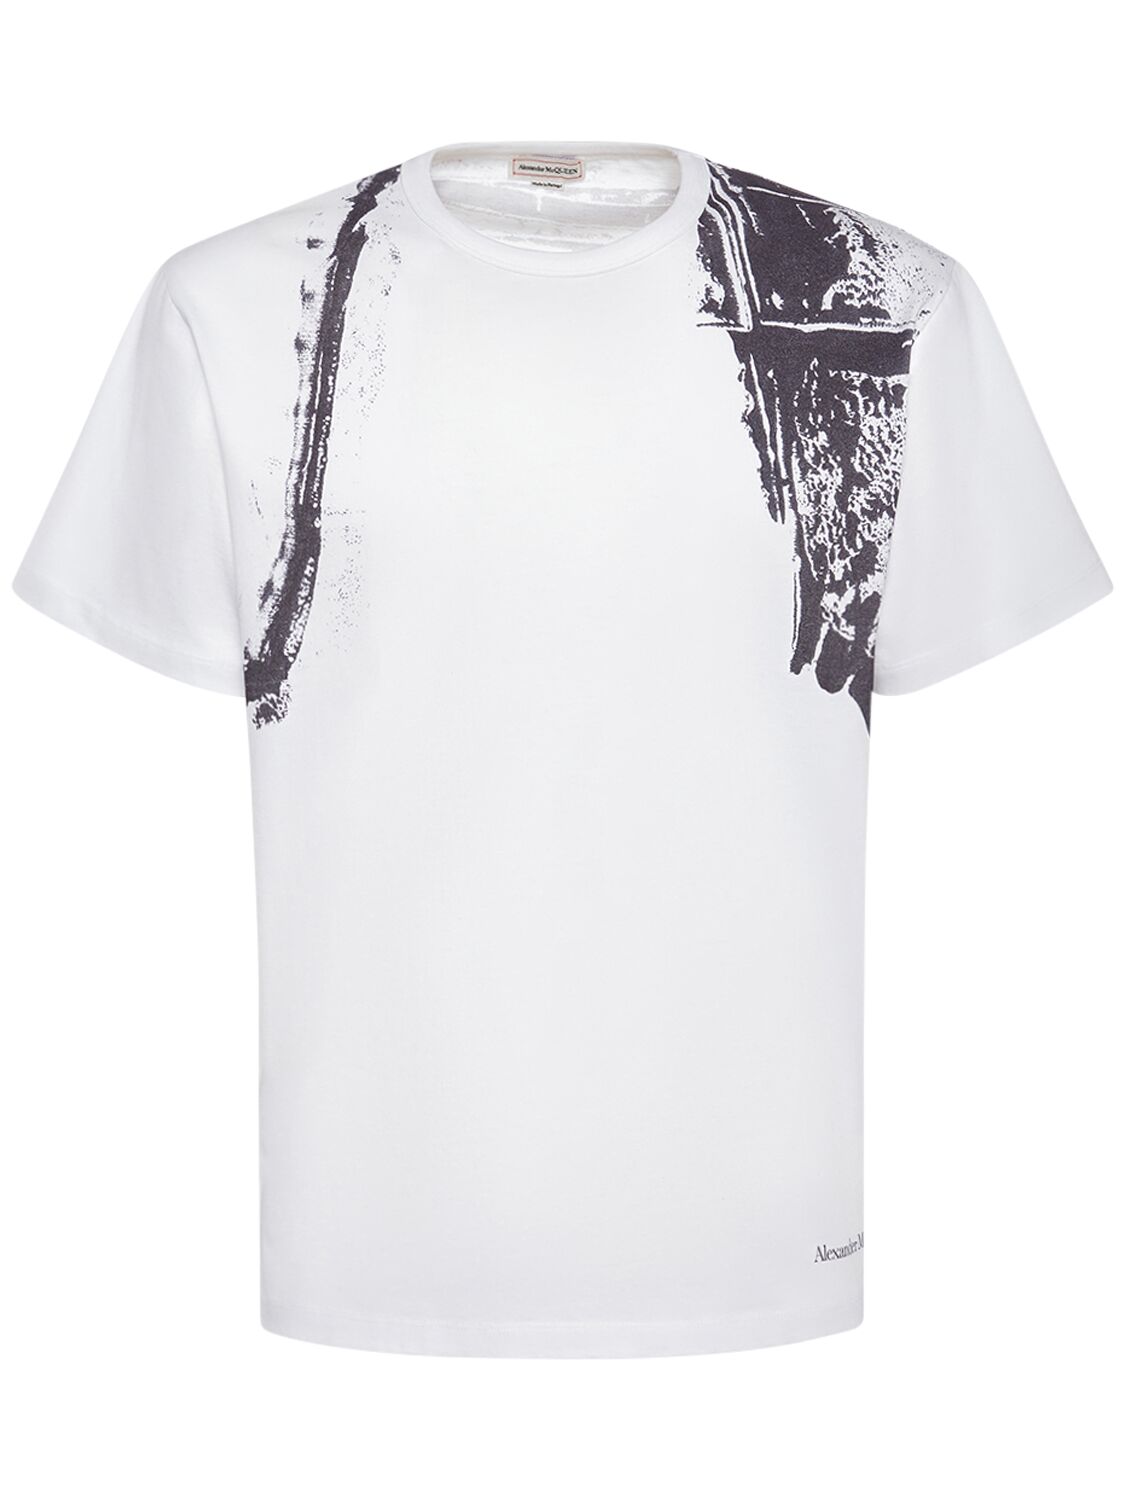 Fold Harness Cotton T-shirt - ALEXANDER MCQUEEN - Modalova